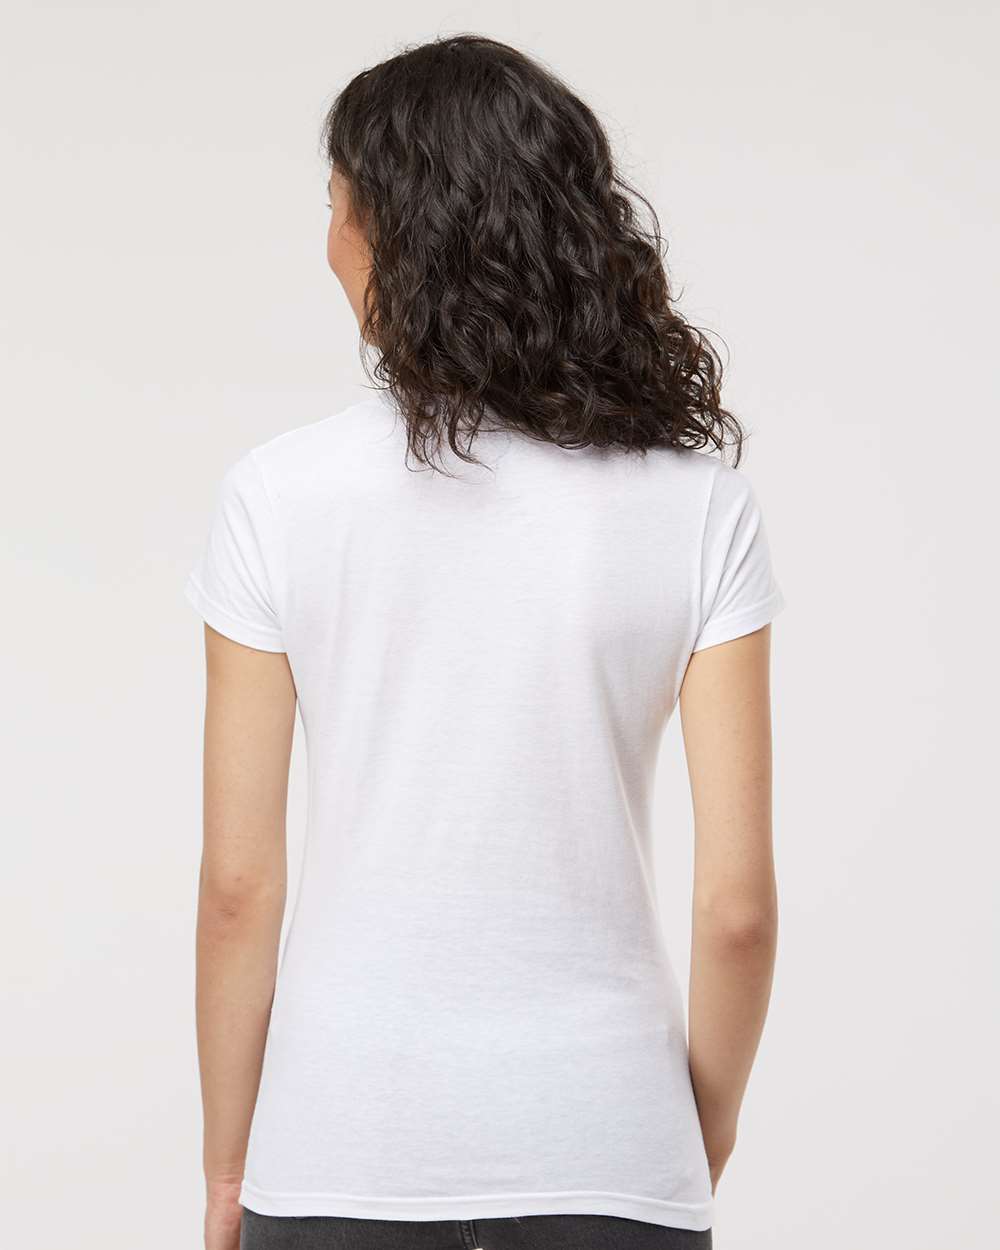 M&O Women's Fine Jersey T-Shirt 4513